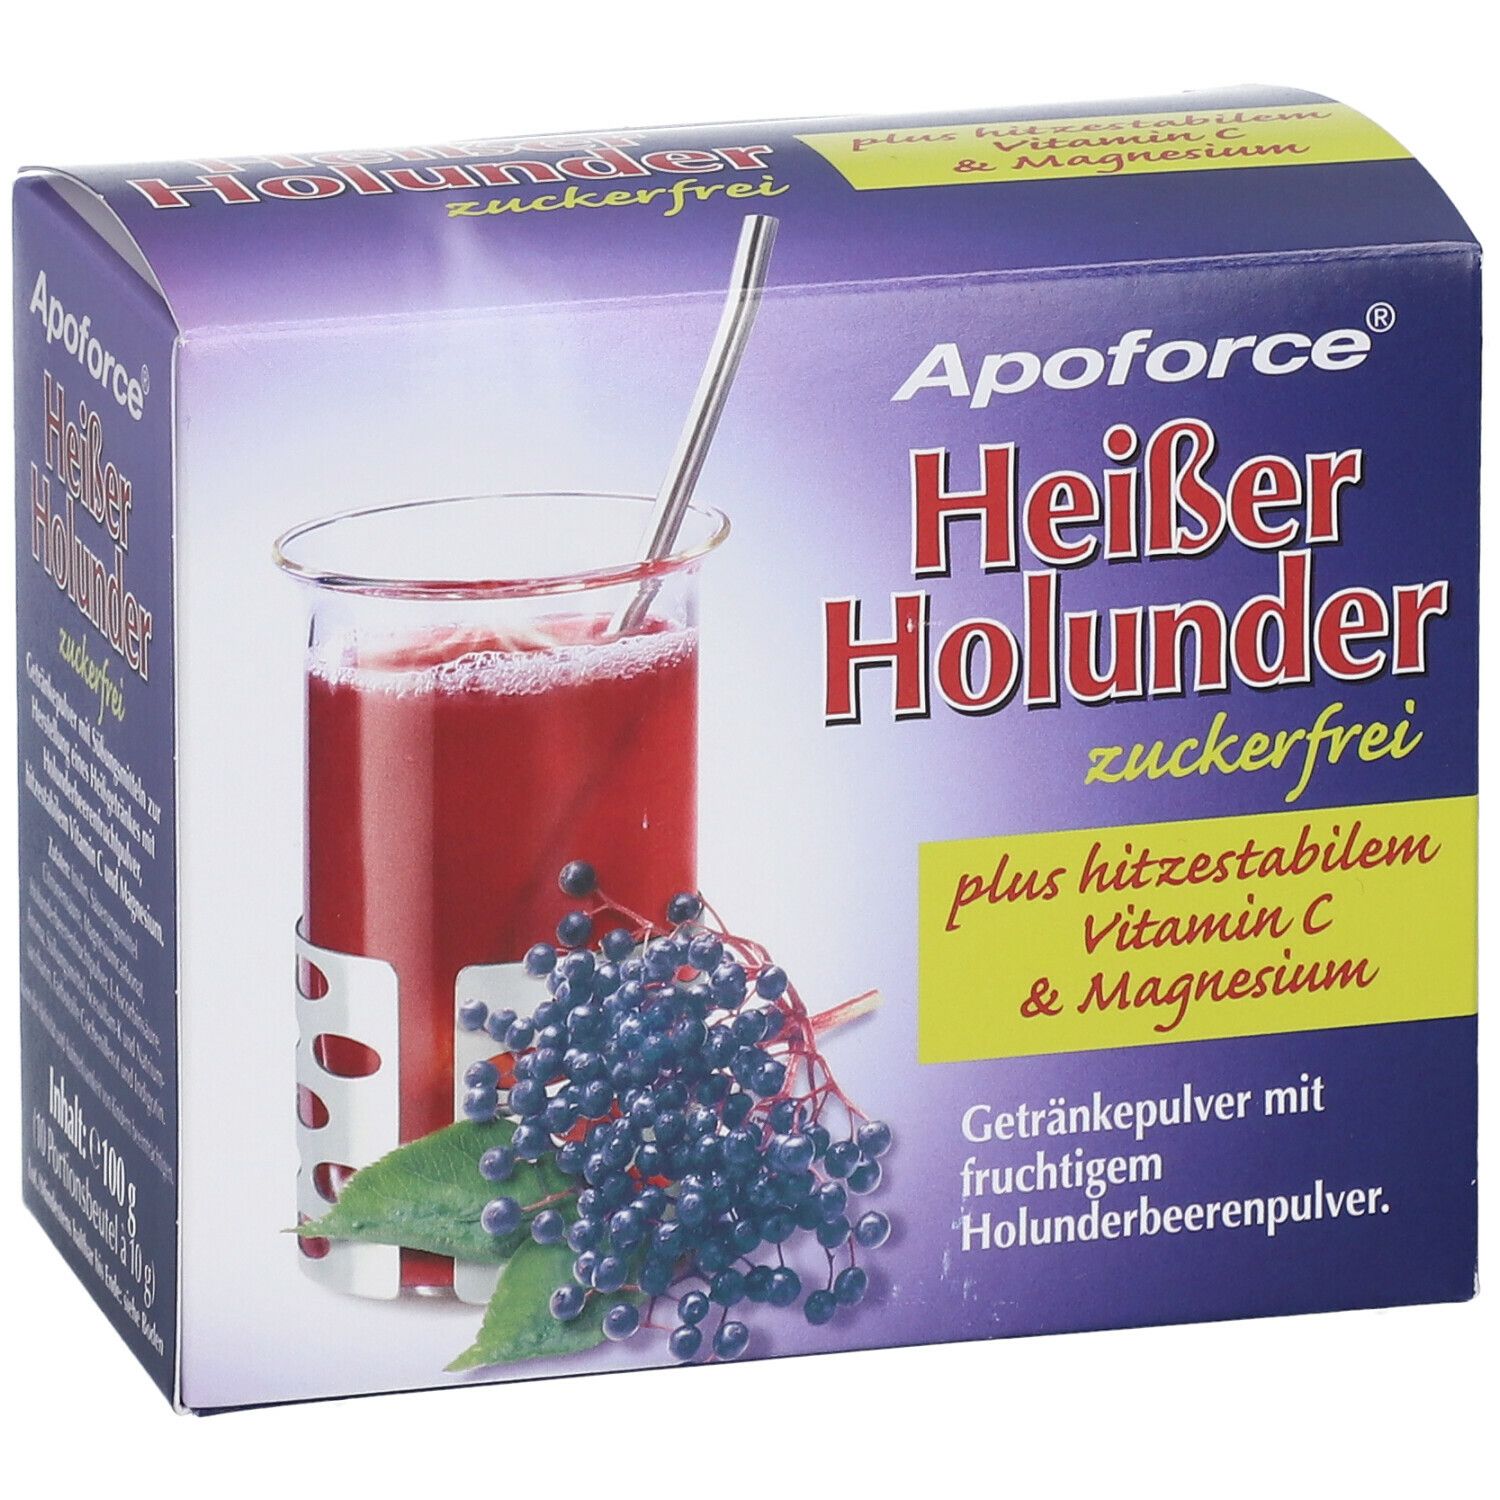 Apoforce® Heißer Holunder zuckerfrei